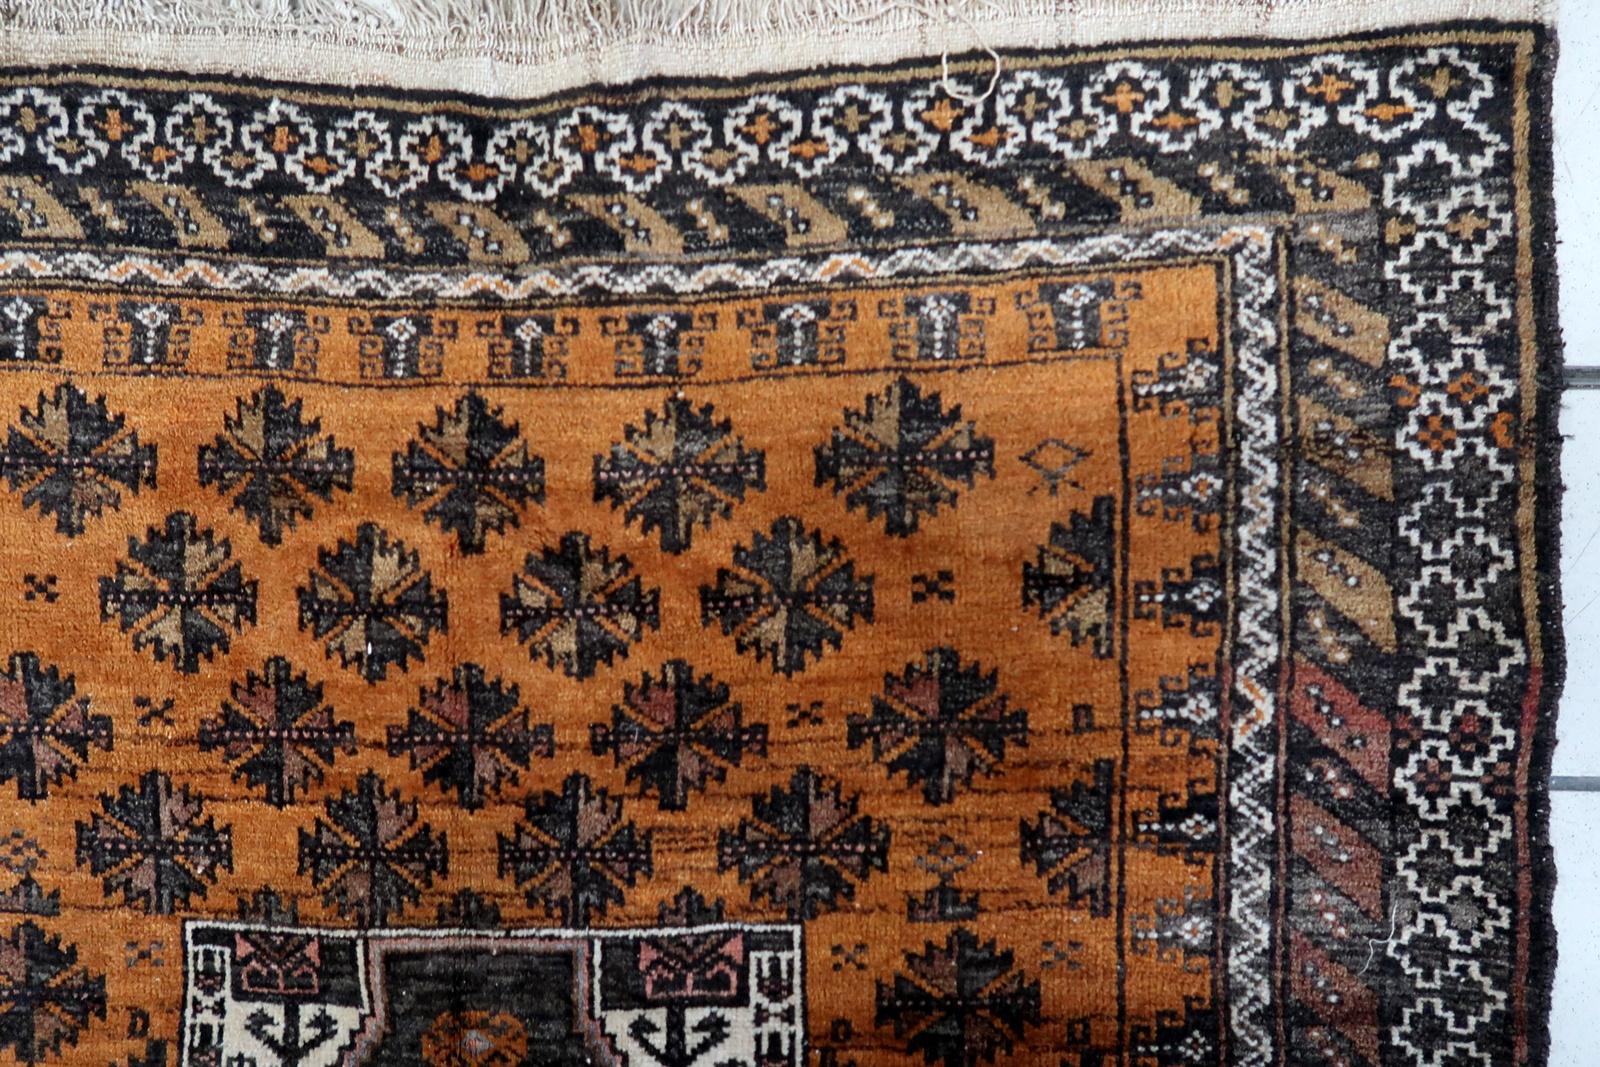 Tapis ancien afghan Baluch fait à la main :

Laissez-vous séduire par l'allure intemporelle de notre ancien tapis Baluch afghan fait à la main, méticuleusement fabriqué dans les années 1920. Mesurant 107 cm x 189 cm, cette pièce polyvalente témoigne